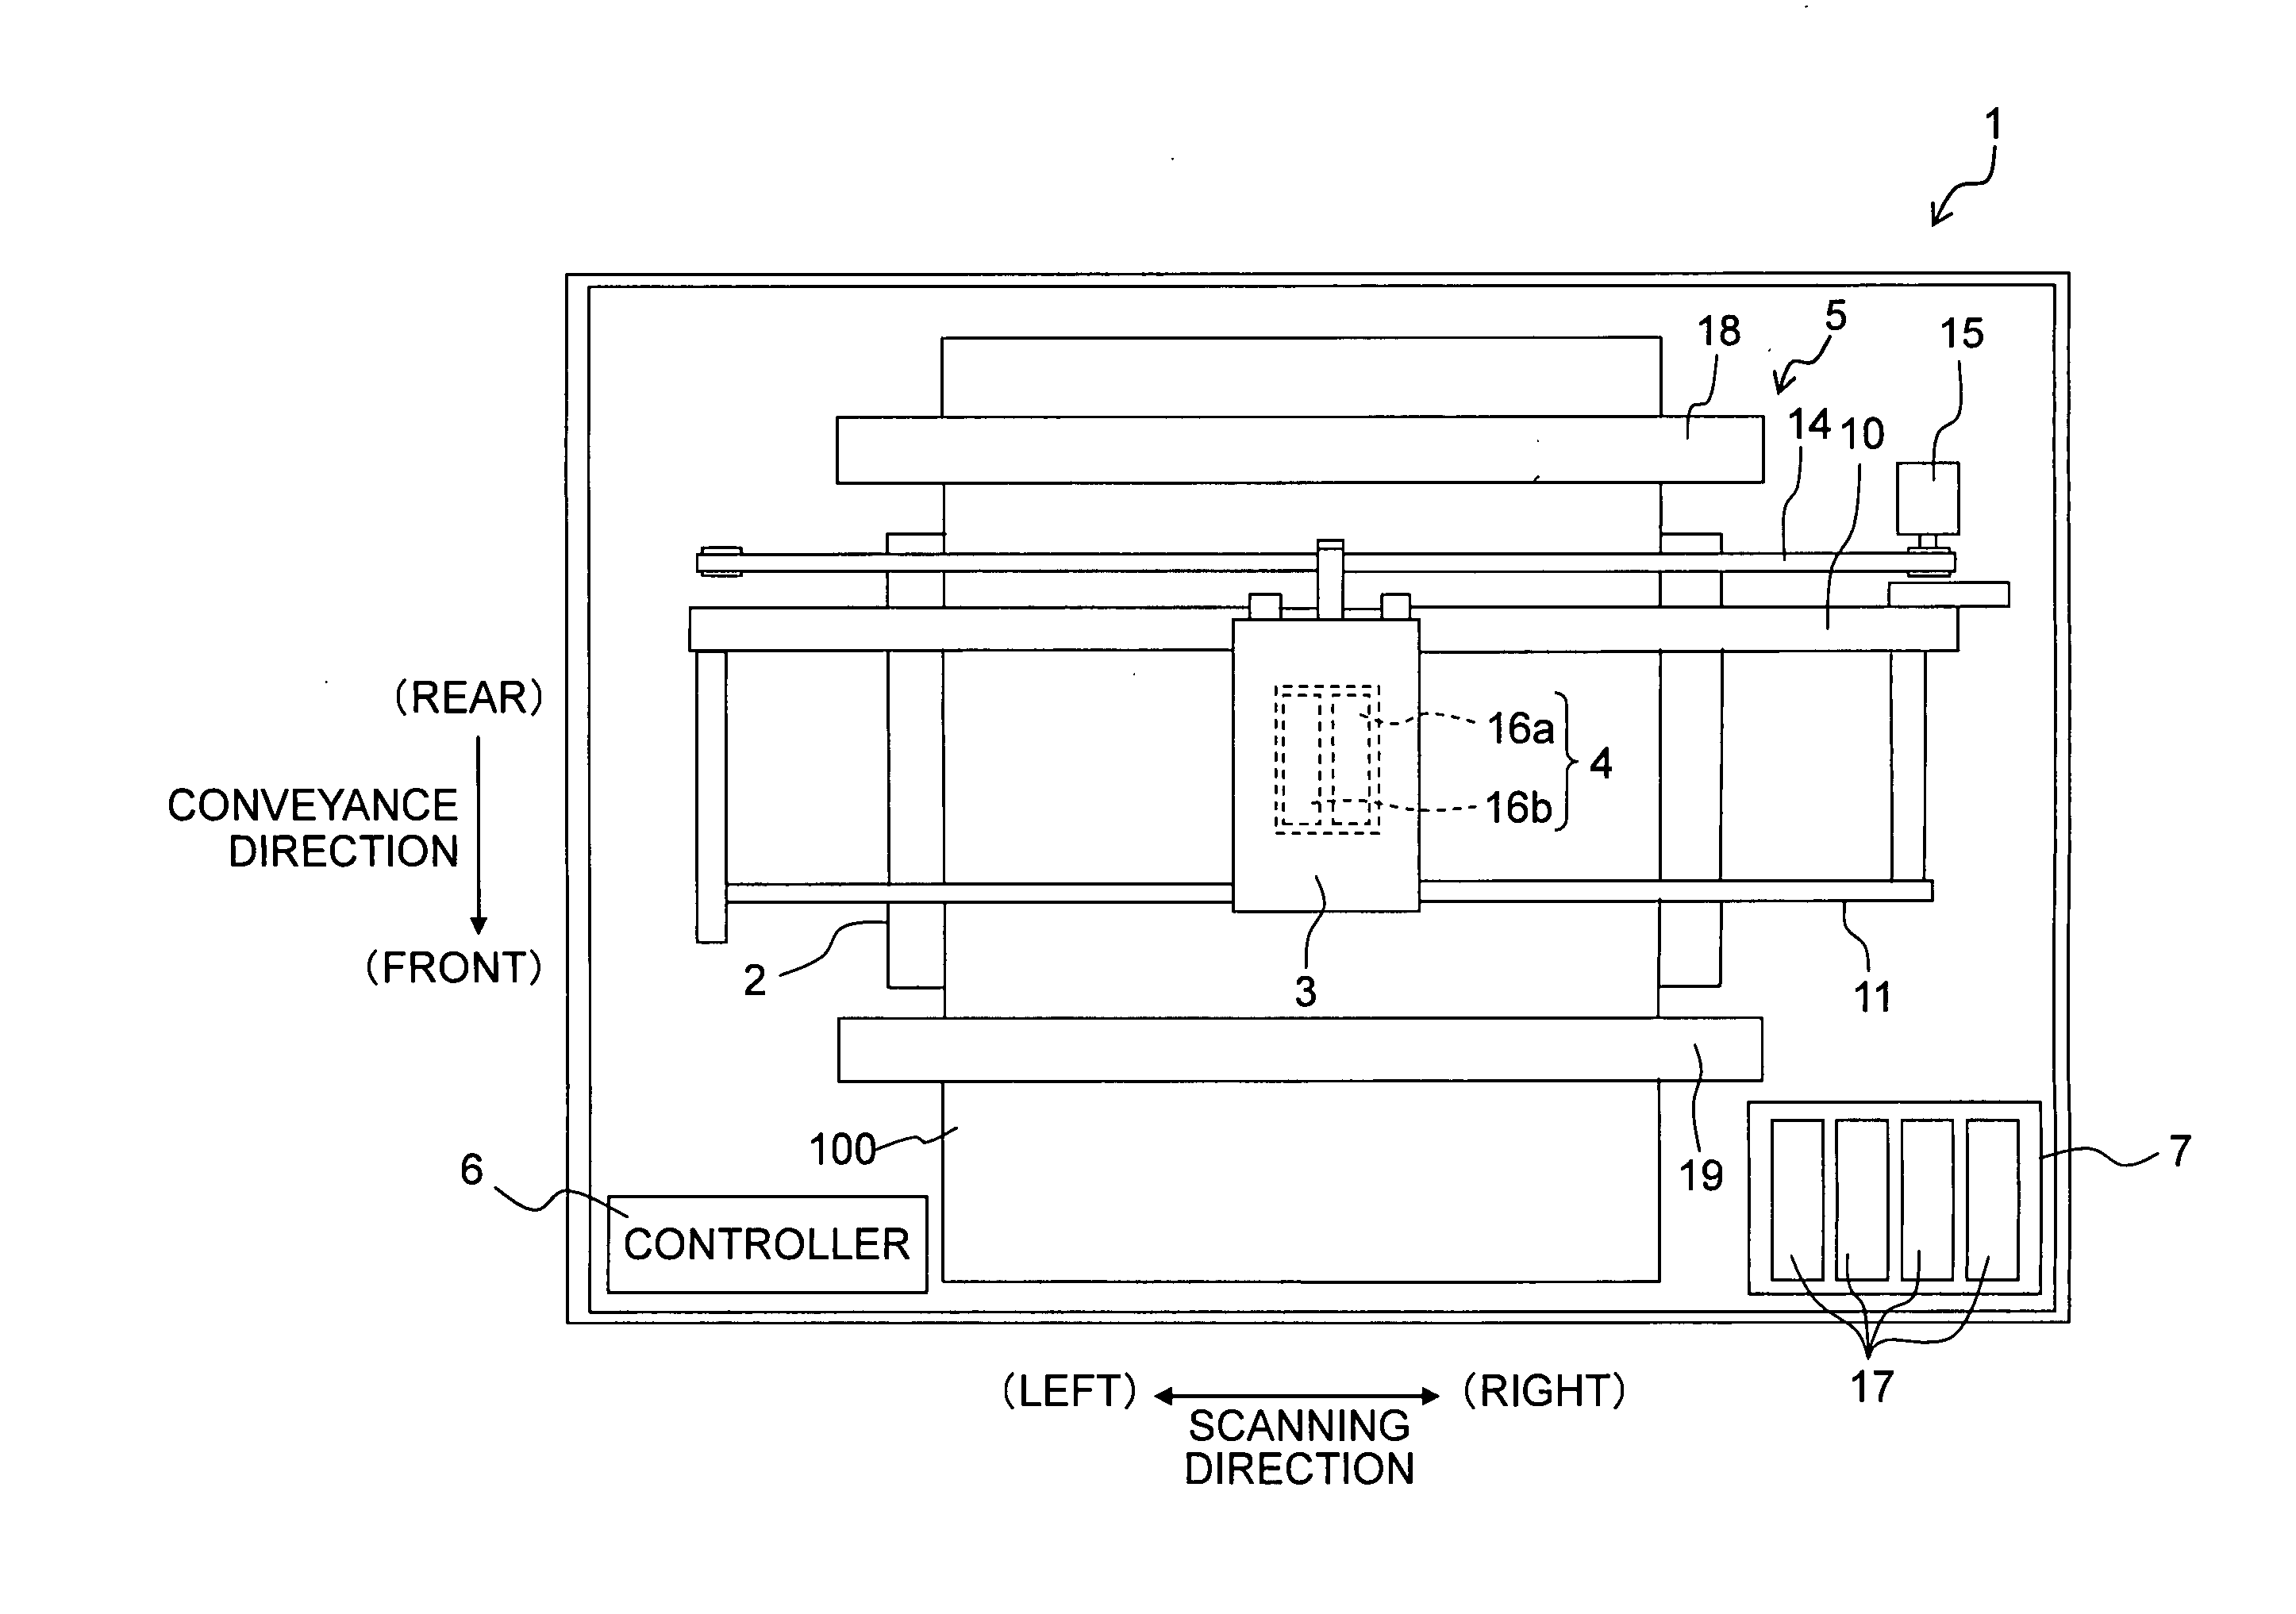 Piezoelectric actuator, liquid discharging apparatus and method for producing piezoelectric actuator